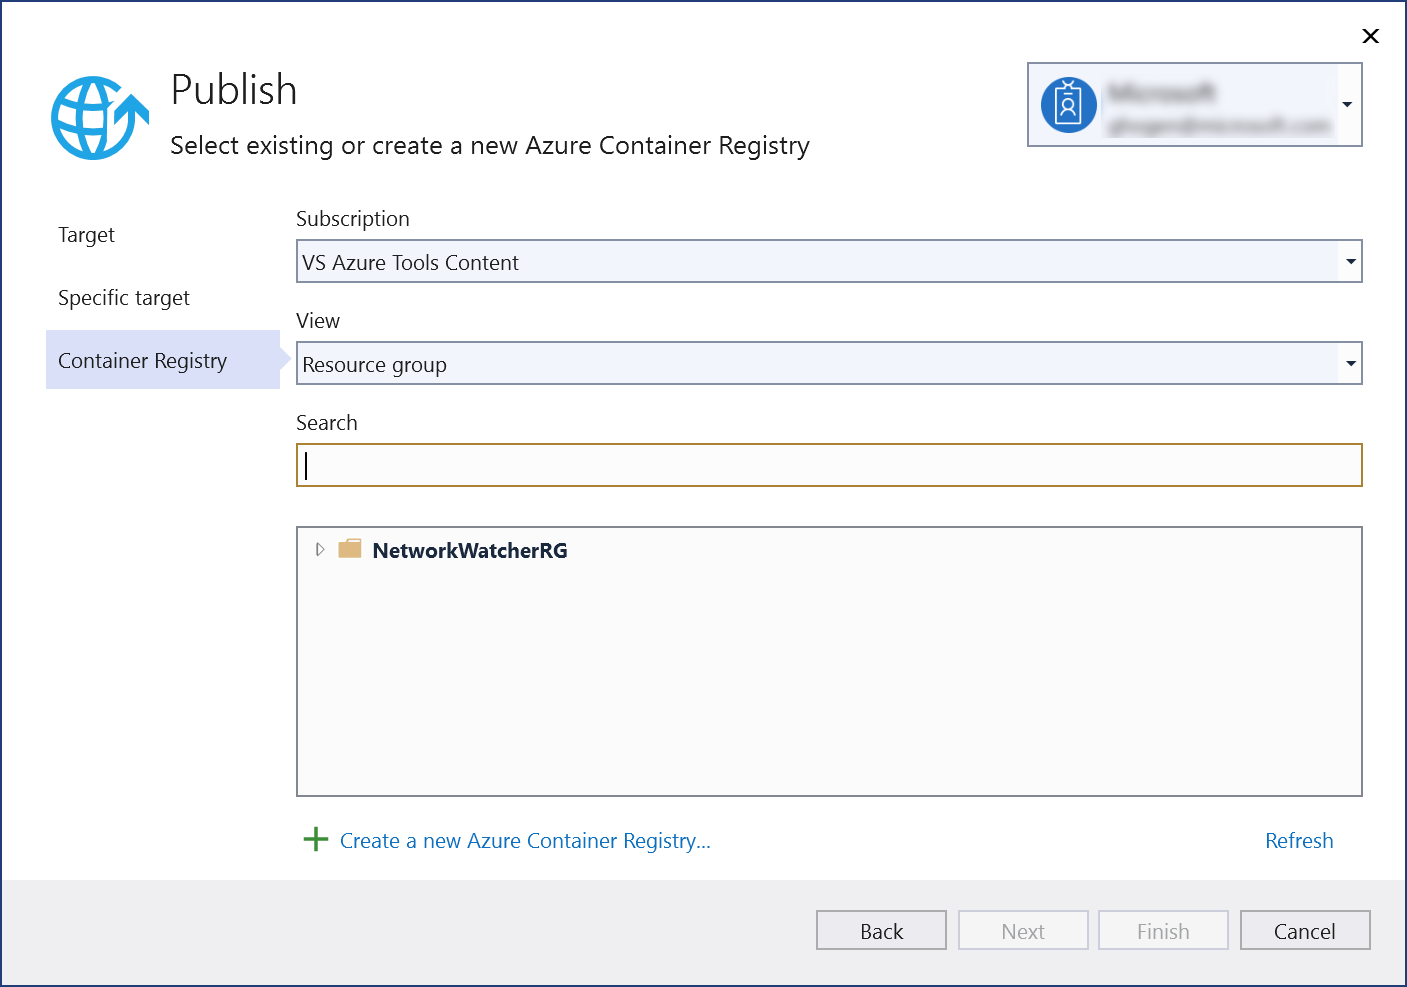 発行ダイアログのスクリーンショット - [新しい Azure Container Registry を作成する] を選択します。